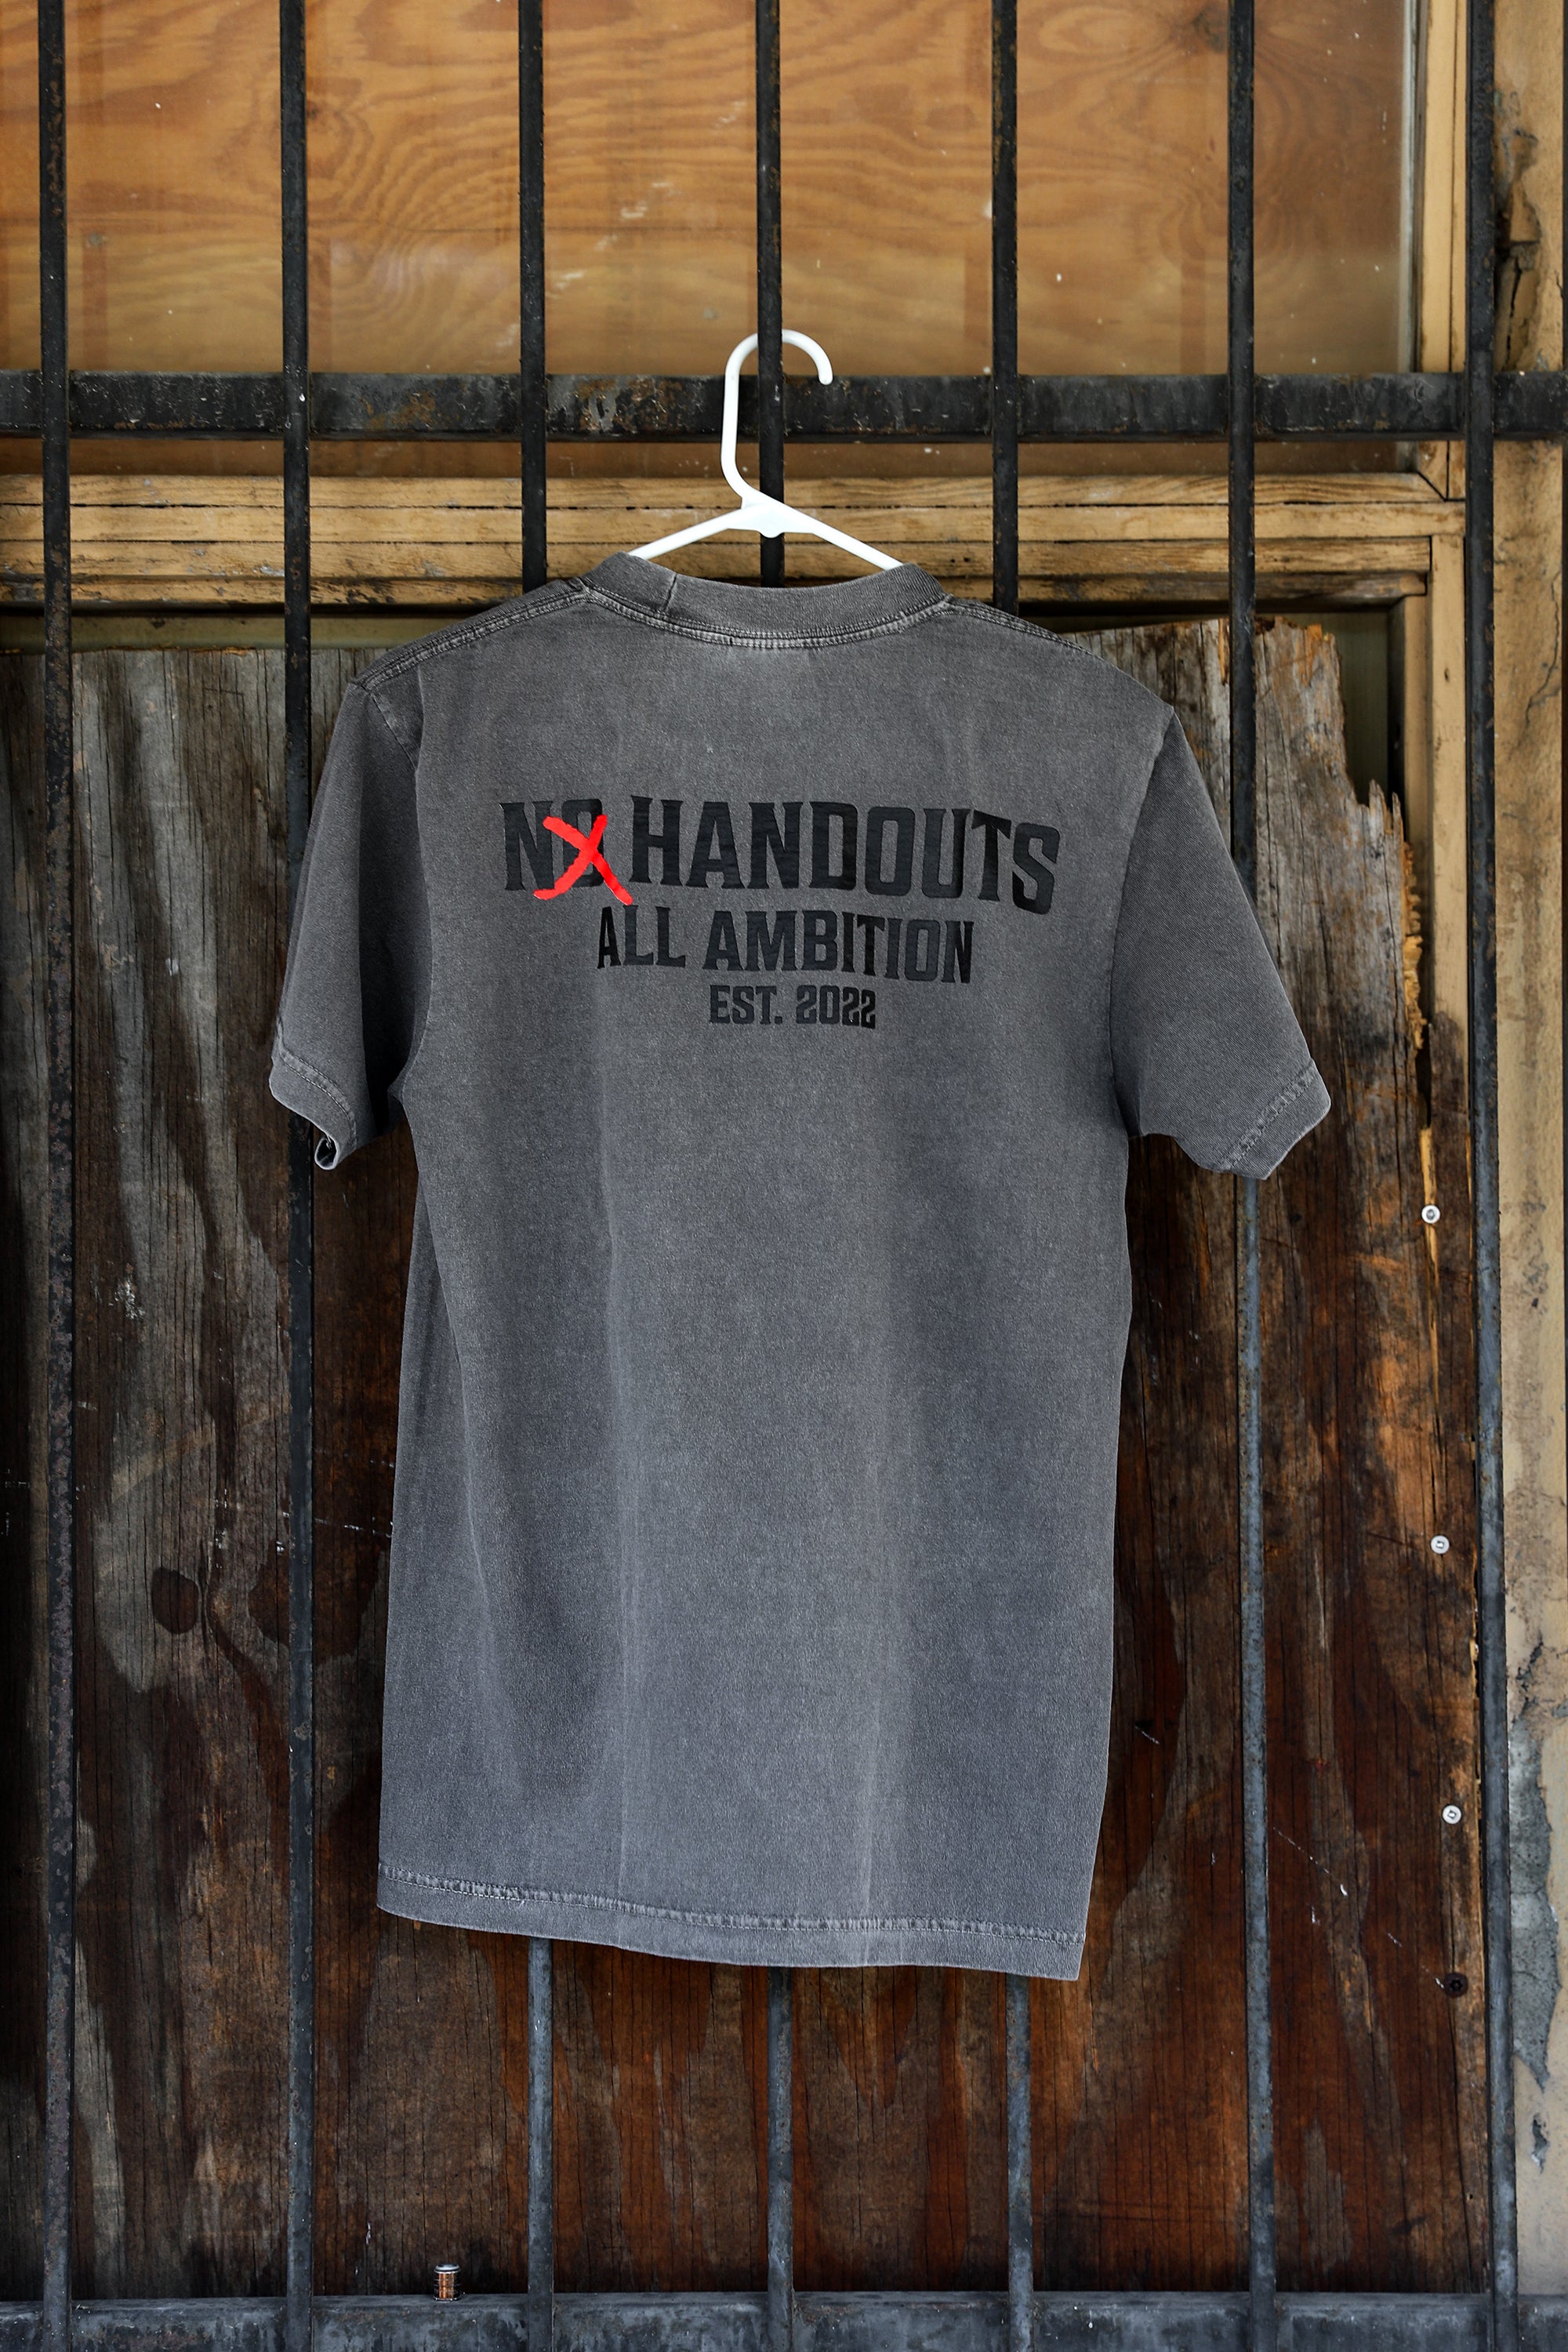 No Handouts T-shirt